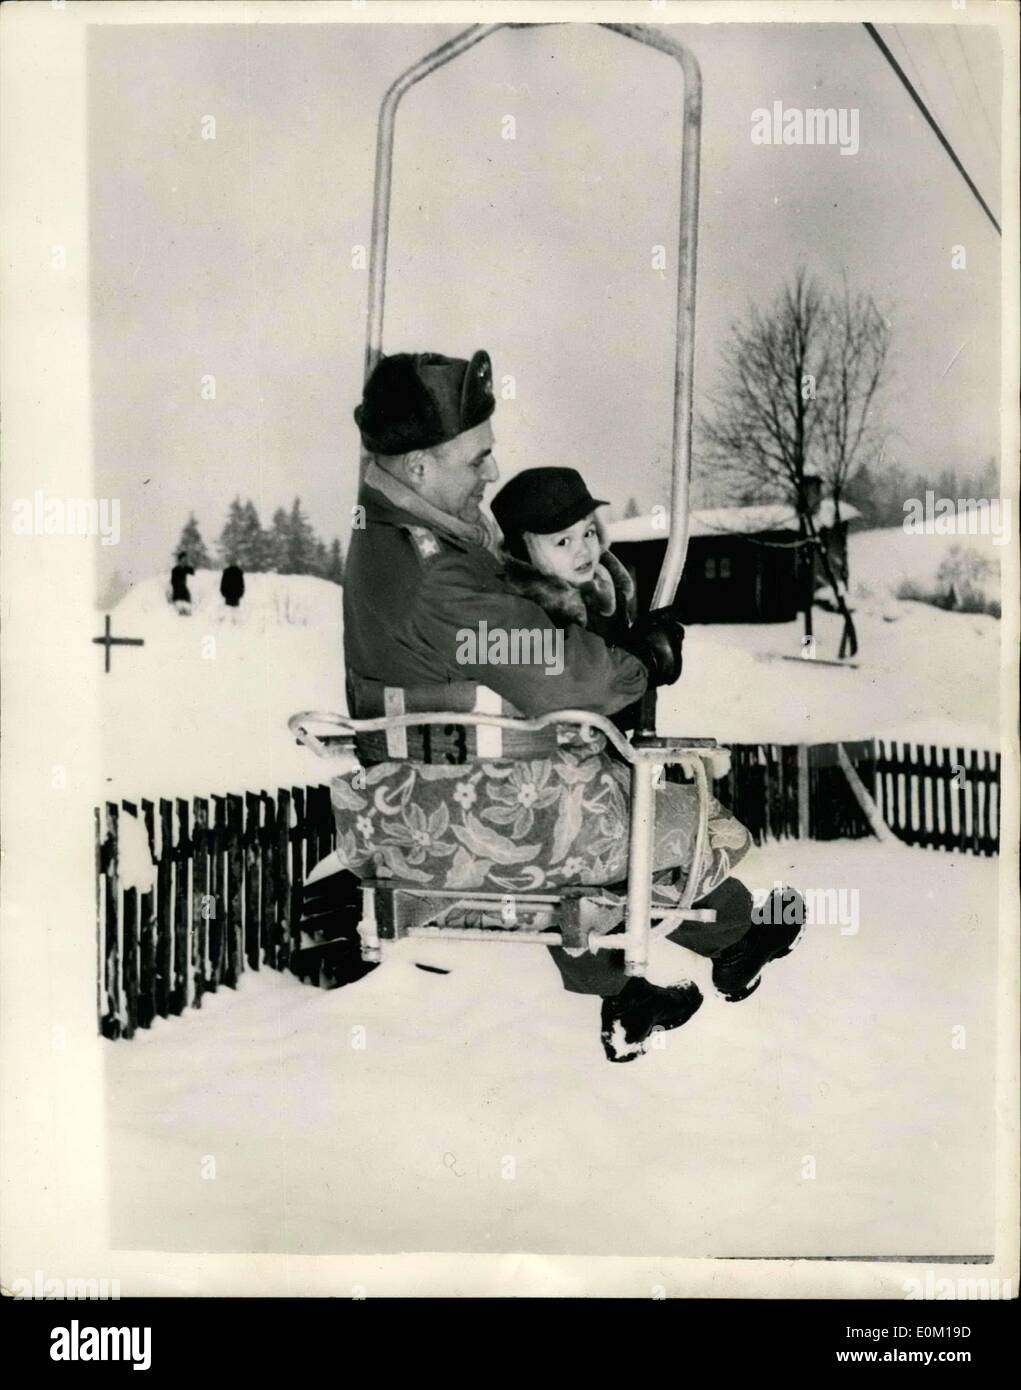 Gen 23, 1953 - Forma Commander Vacanze D. Baviera foto esclusive di generale Radgway,: Generale Rigway comandante supremo delle potenze alleate in Europa, è in vacanza con la moglie e il figlio, presso l'U.S. Esercito centro ricreativo, in Germisch-Pertenkirchen, Alta Baviera la foto mostra il generale Ridgway, mantiene il suo figlio Matty, come essi ride su ski-lift mentre in vacanza al Germisch. Foto Stock